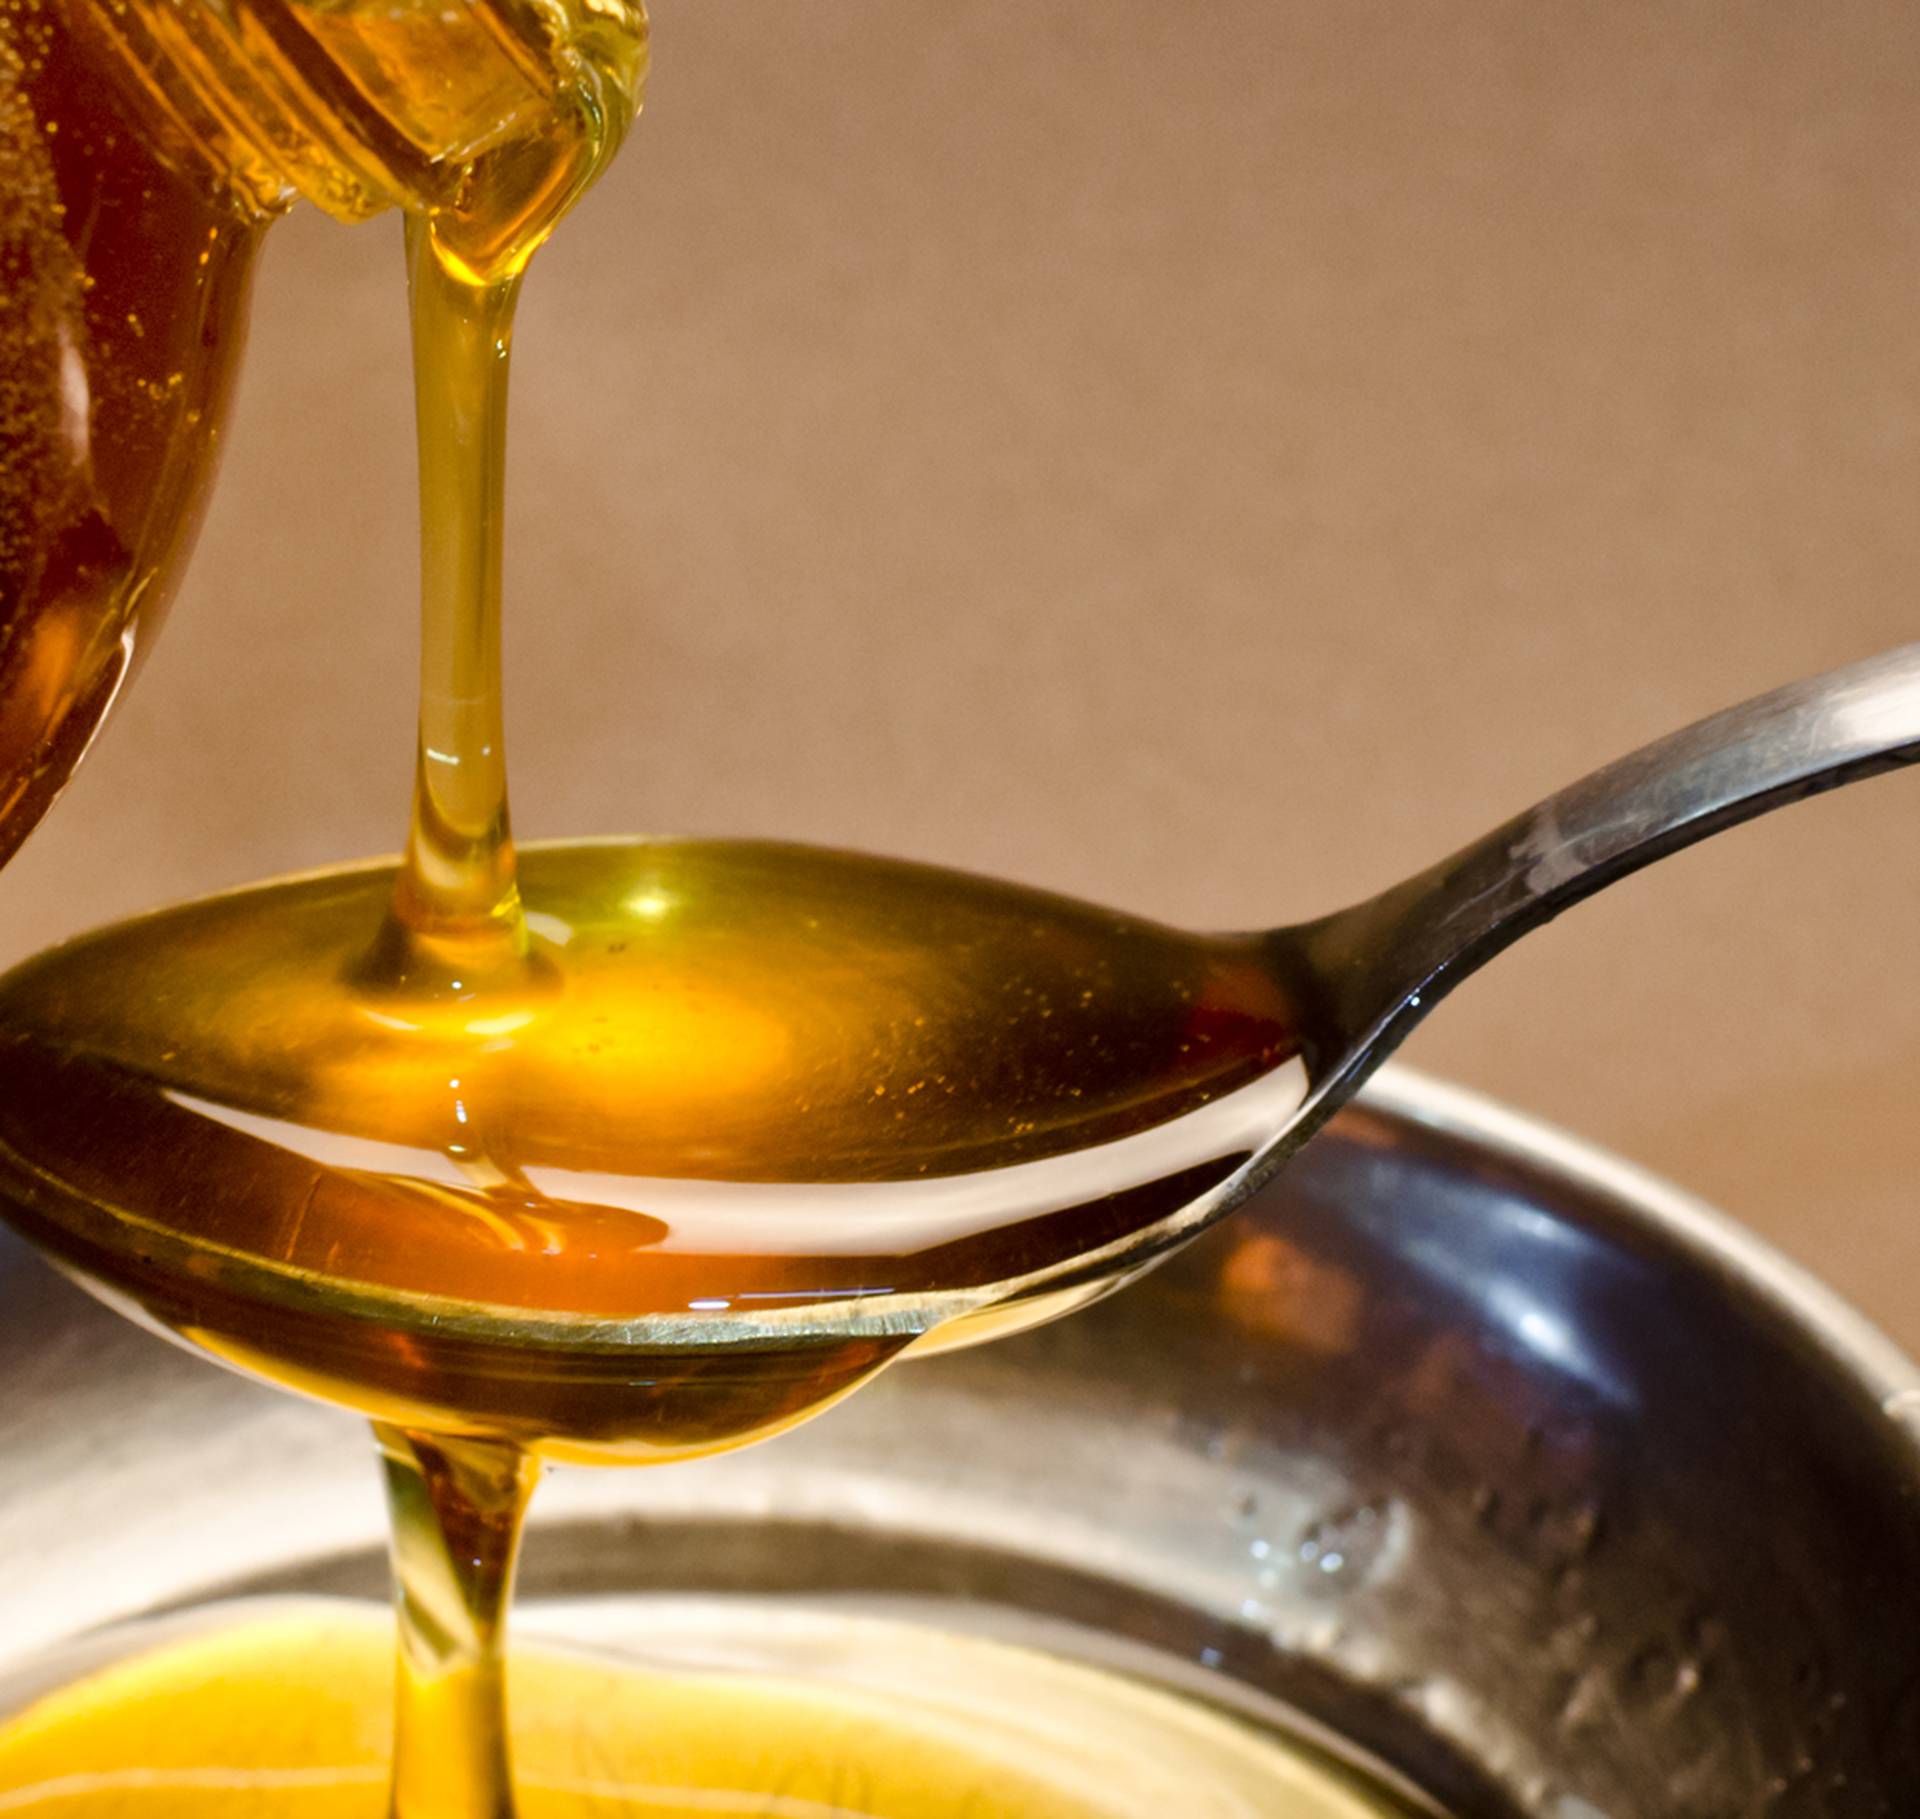 Glavobolja će brzo prestati uz ovaj lijek od meda i češnjaka